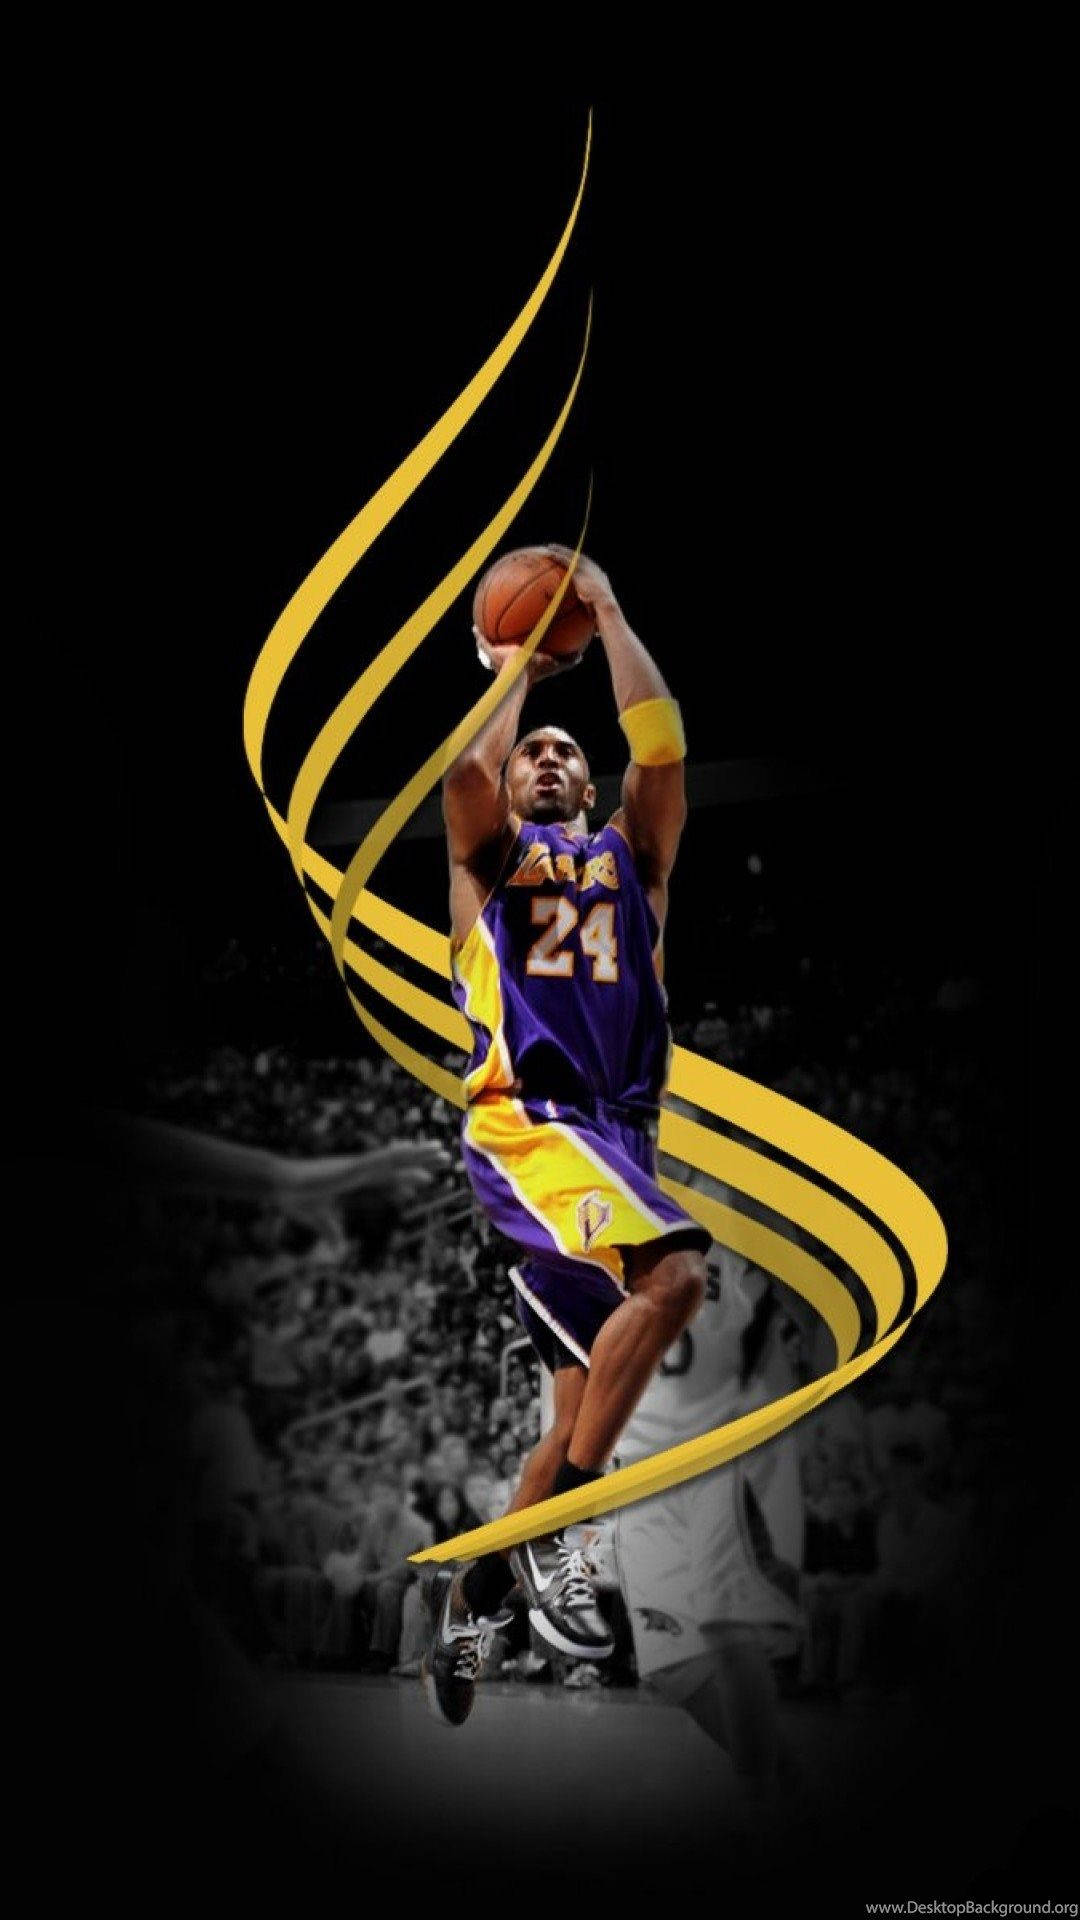 Vis støtte for din yndlings NBA-hold - Lakers - med denne unikke Lakers Iphone tapet! Wallpaper